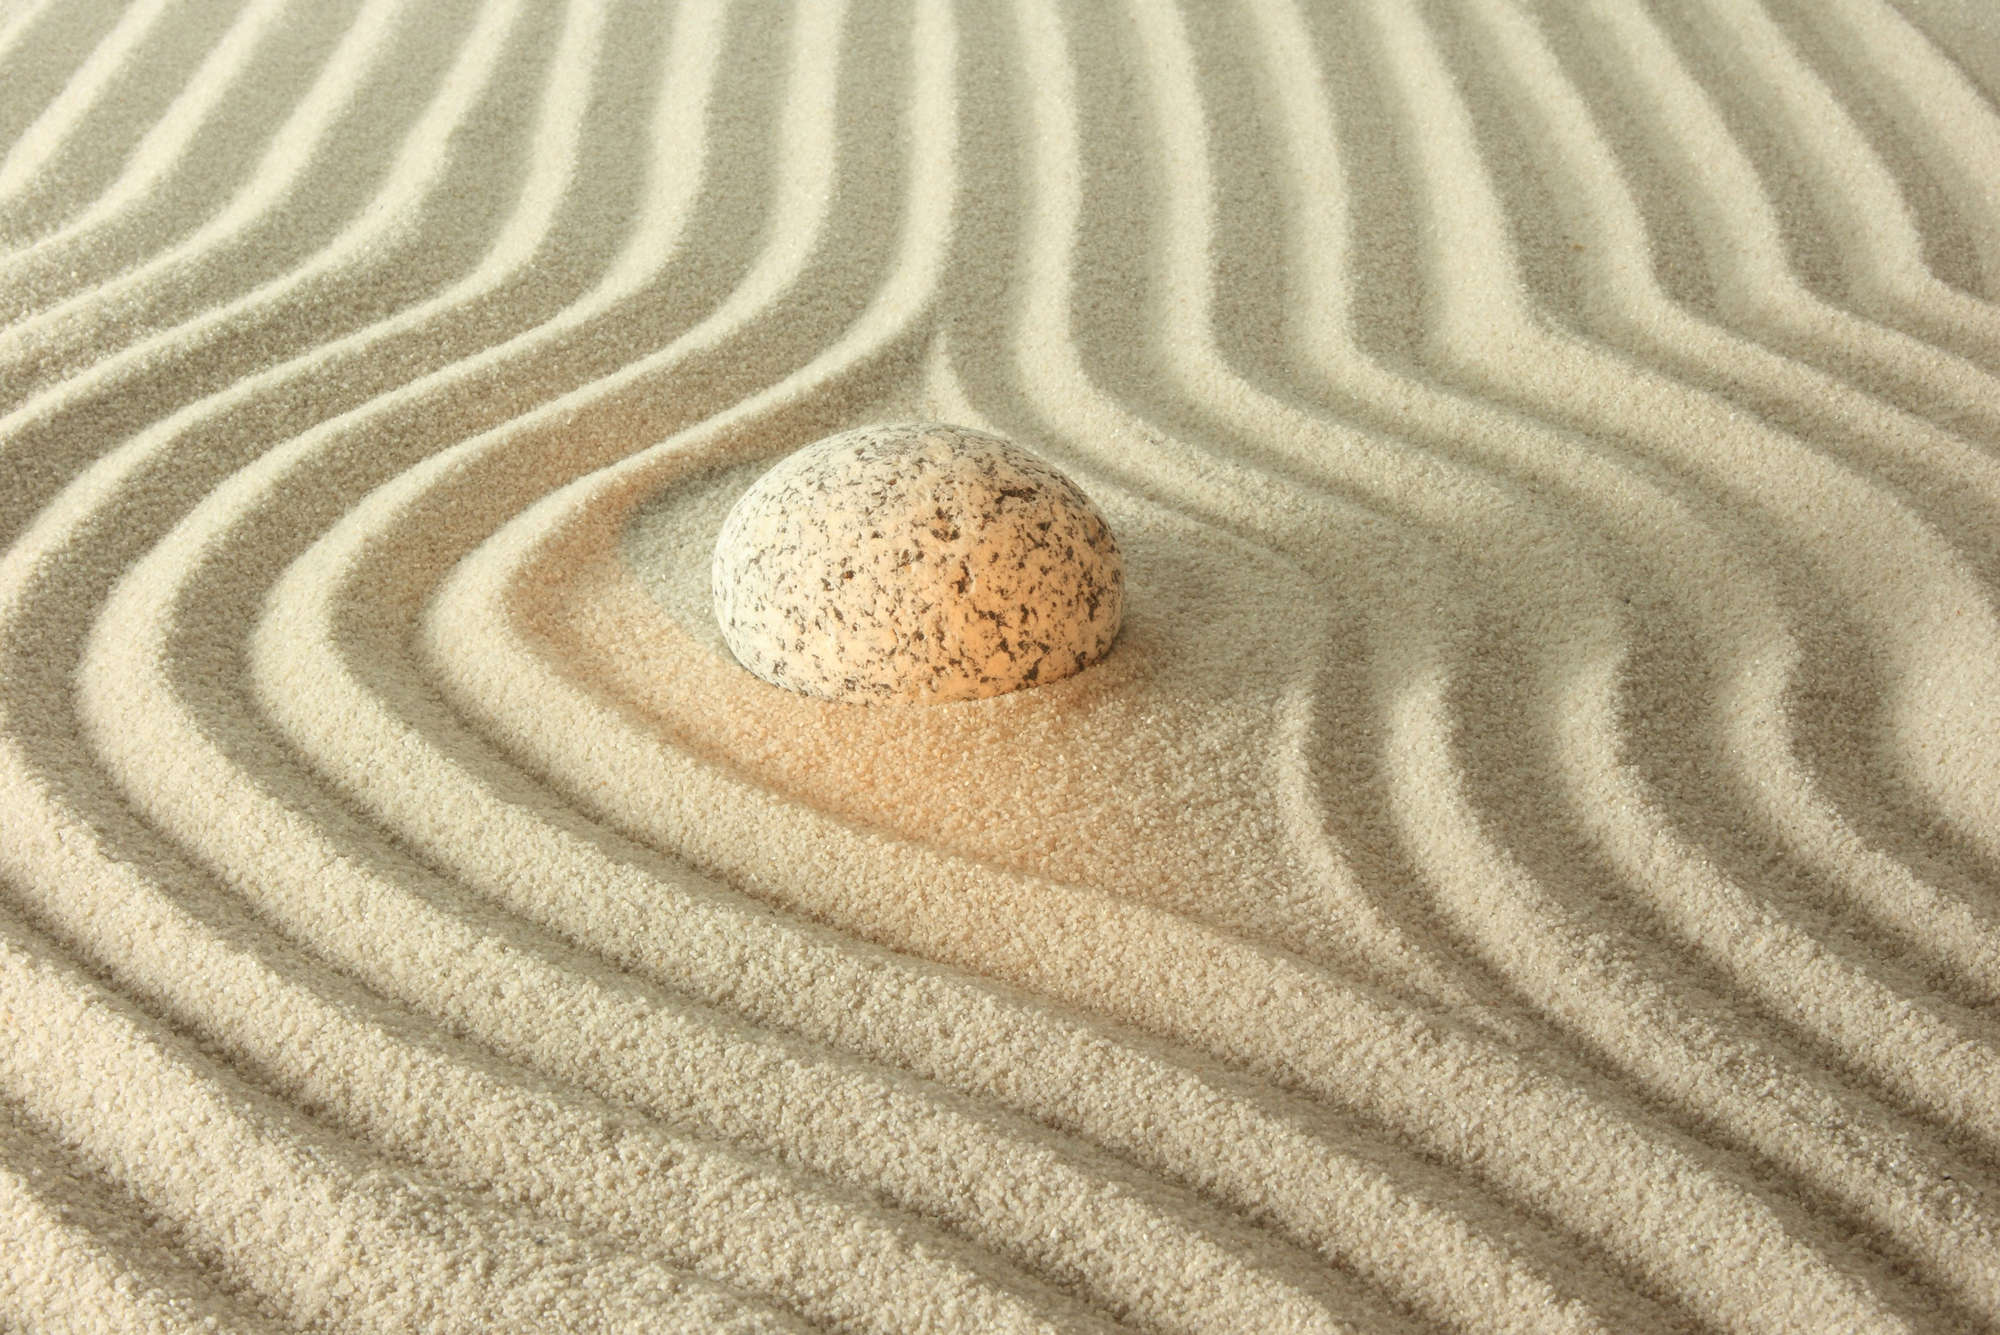             Fotomural piedra resplandeciente en la arena - tejido no tejido liso de alta calidad
        